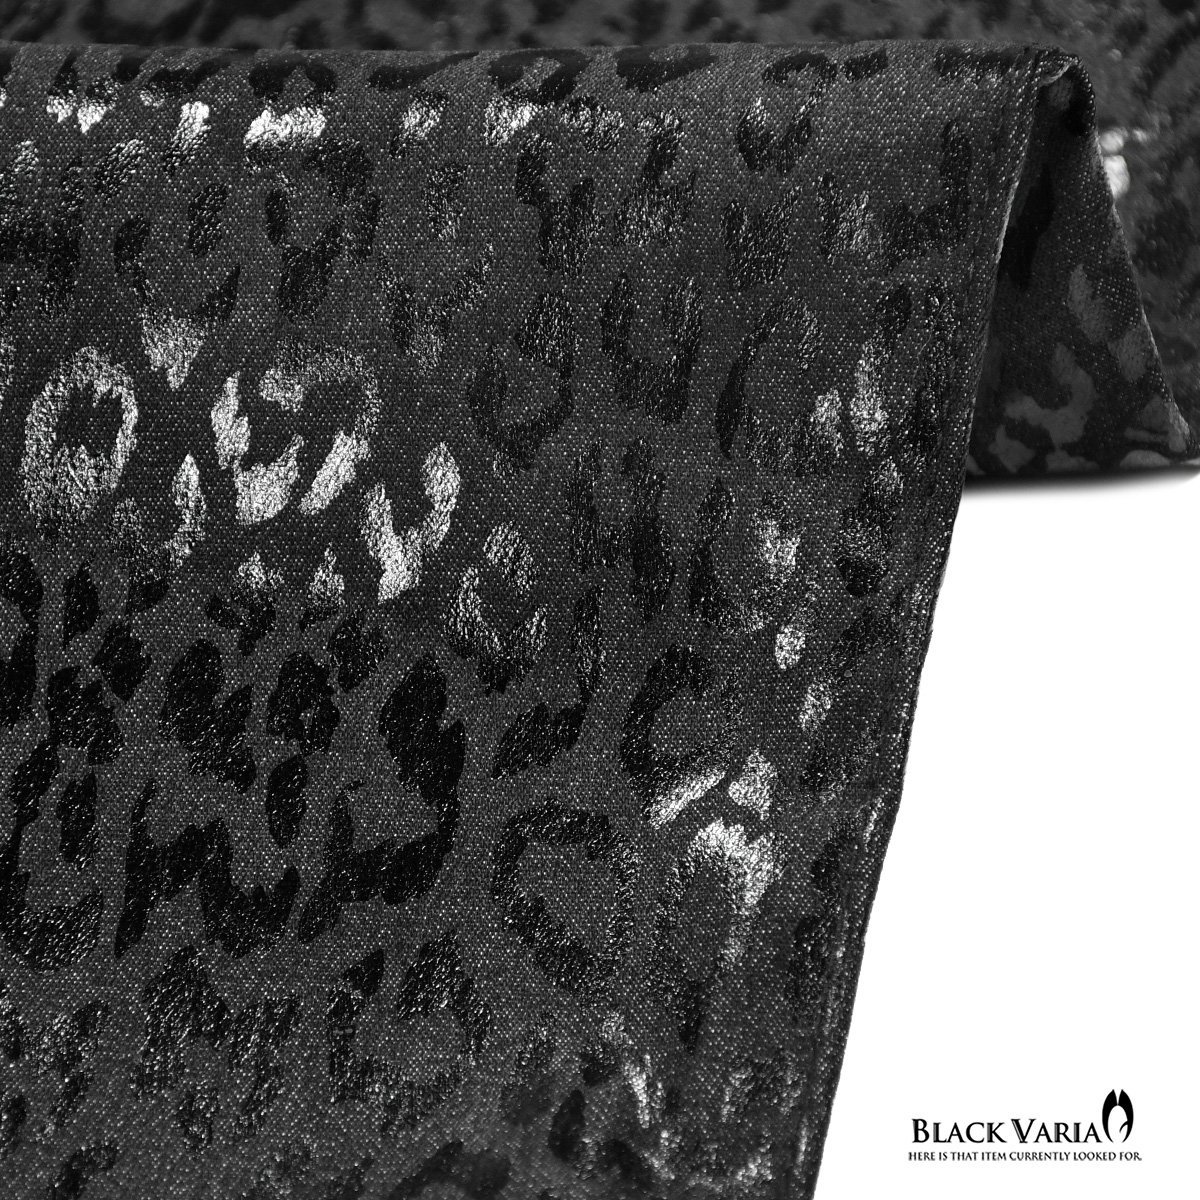 212751-bk BlackVaria ロングパンツ 箔プリント 豹柄 ブーツカット 日本製 ローライズ ボトムス シューカット メンズ(ブラック黒) M30 _画像4